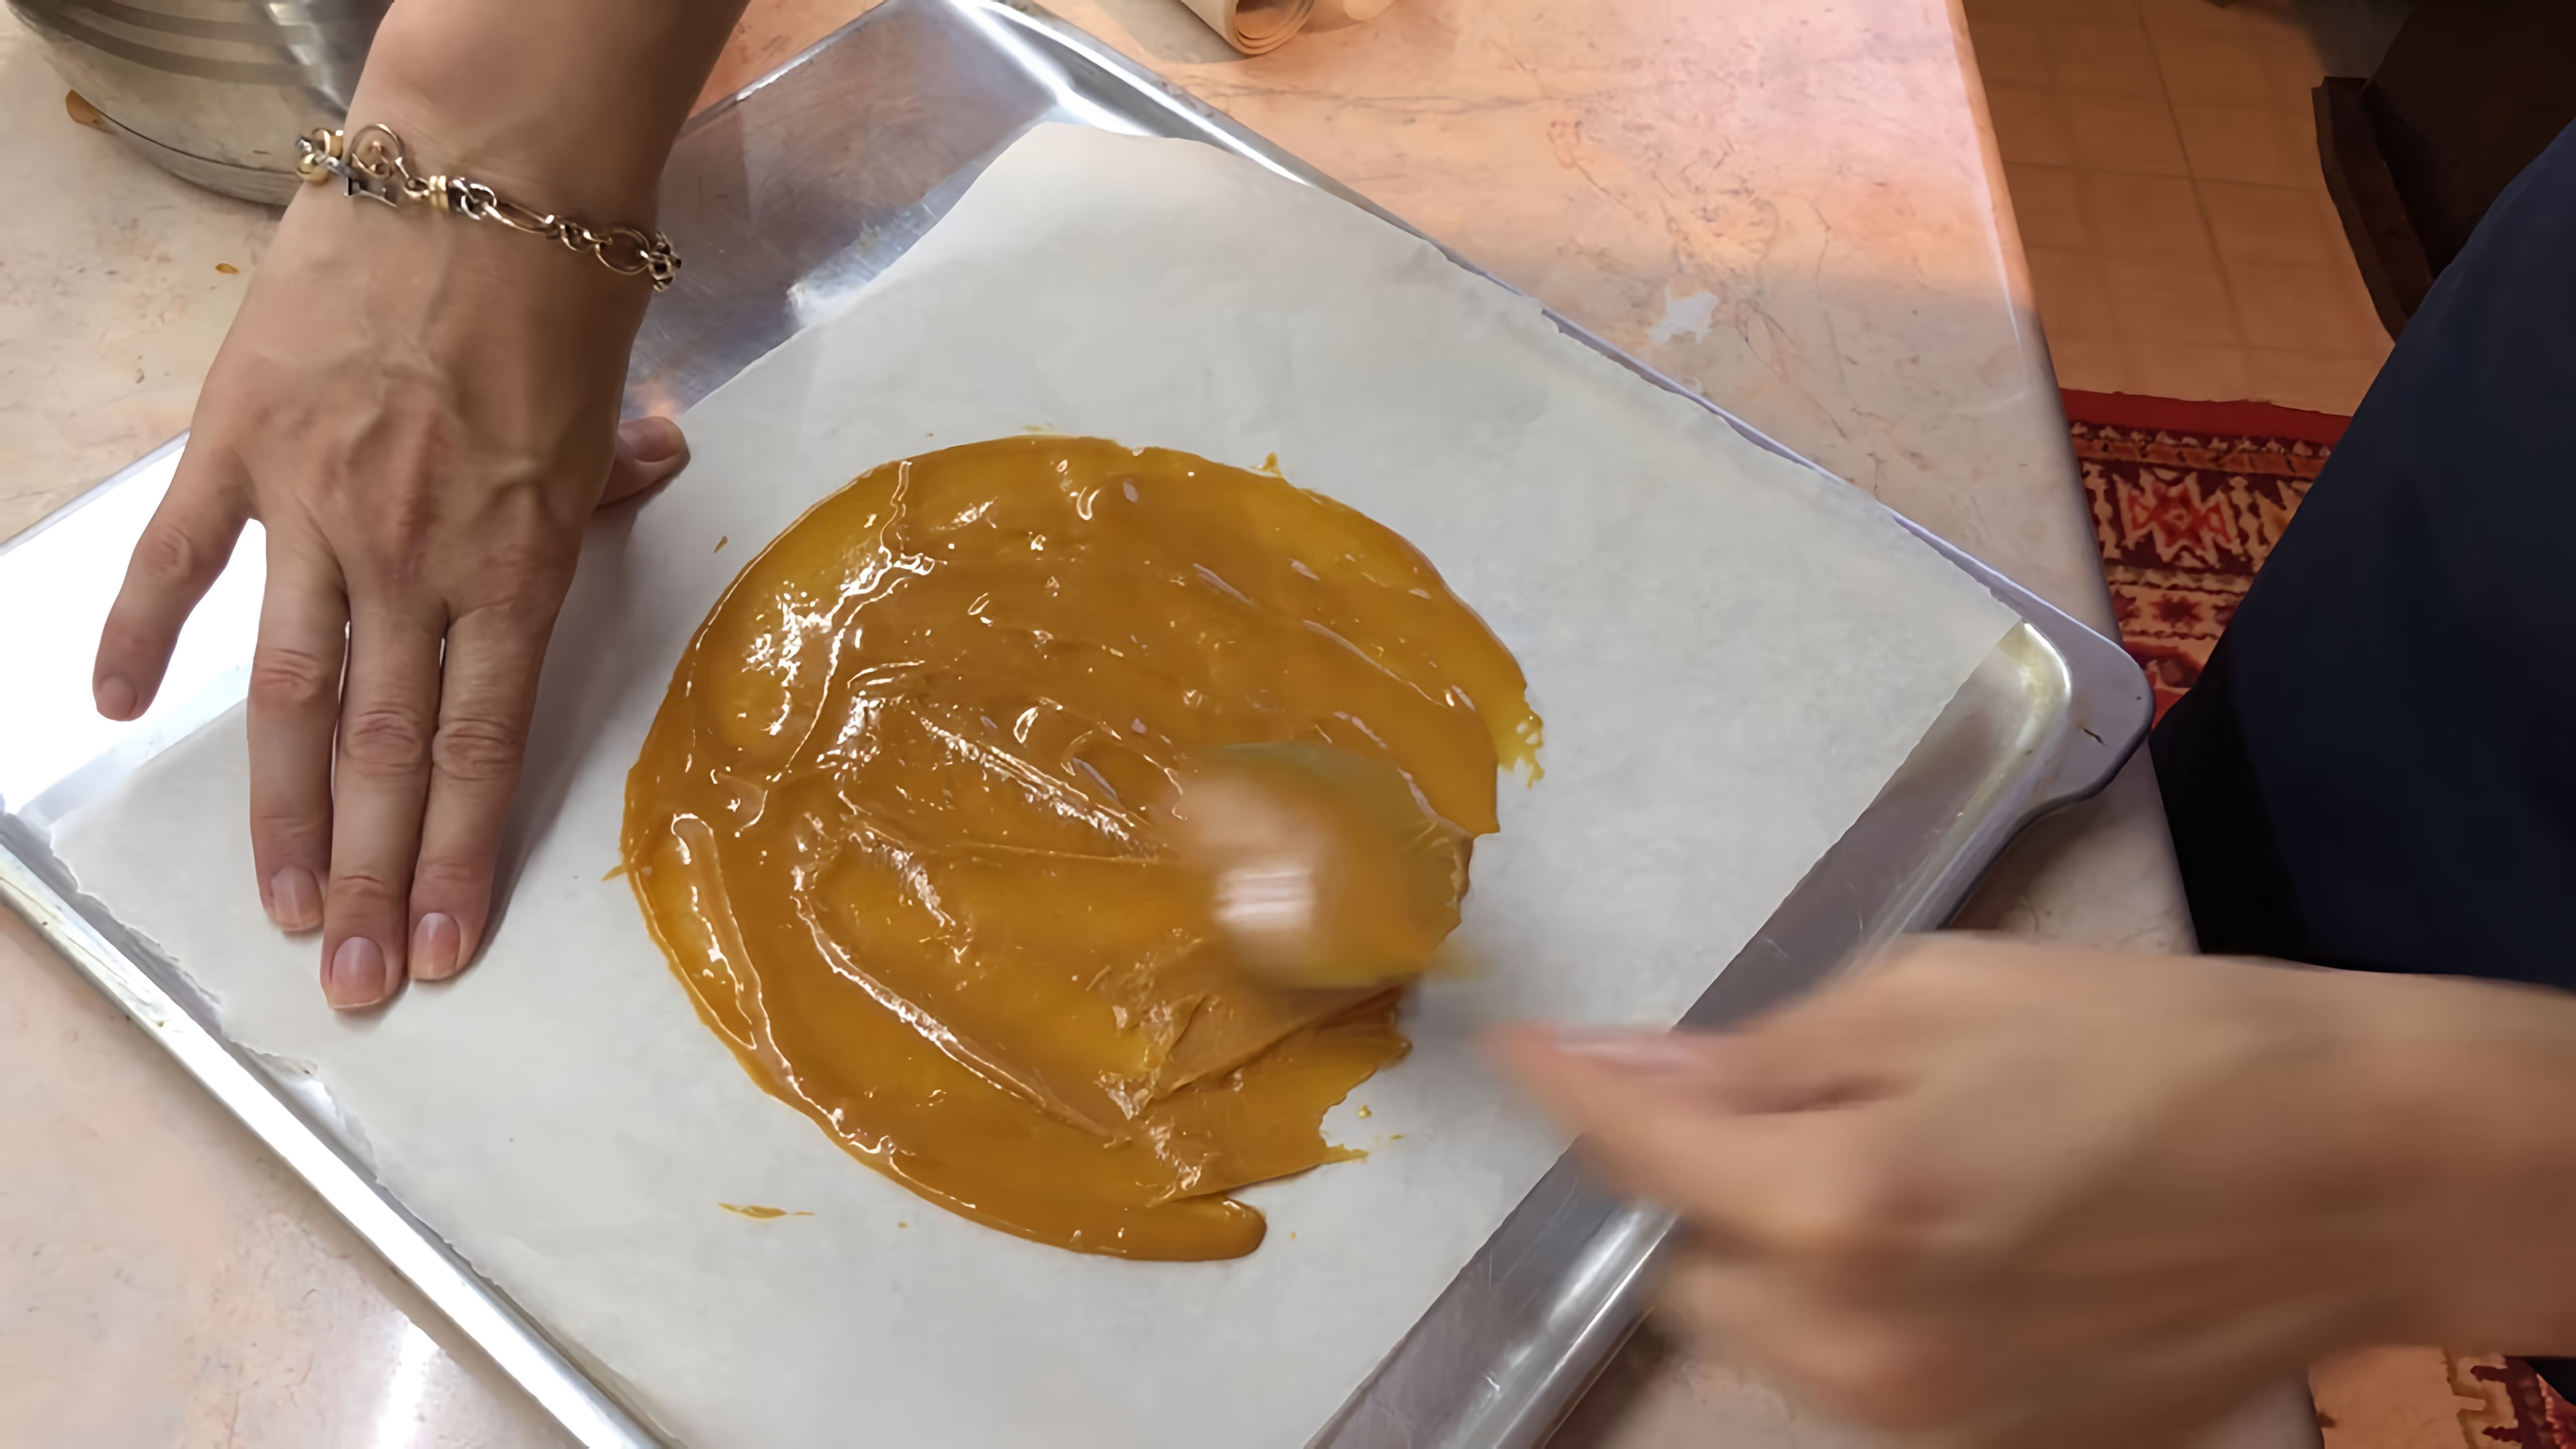 В этом видео демонстрируется рецепт приготовления торта "Медовик" без раскатки коржей